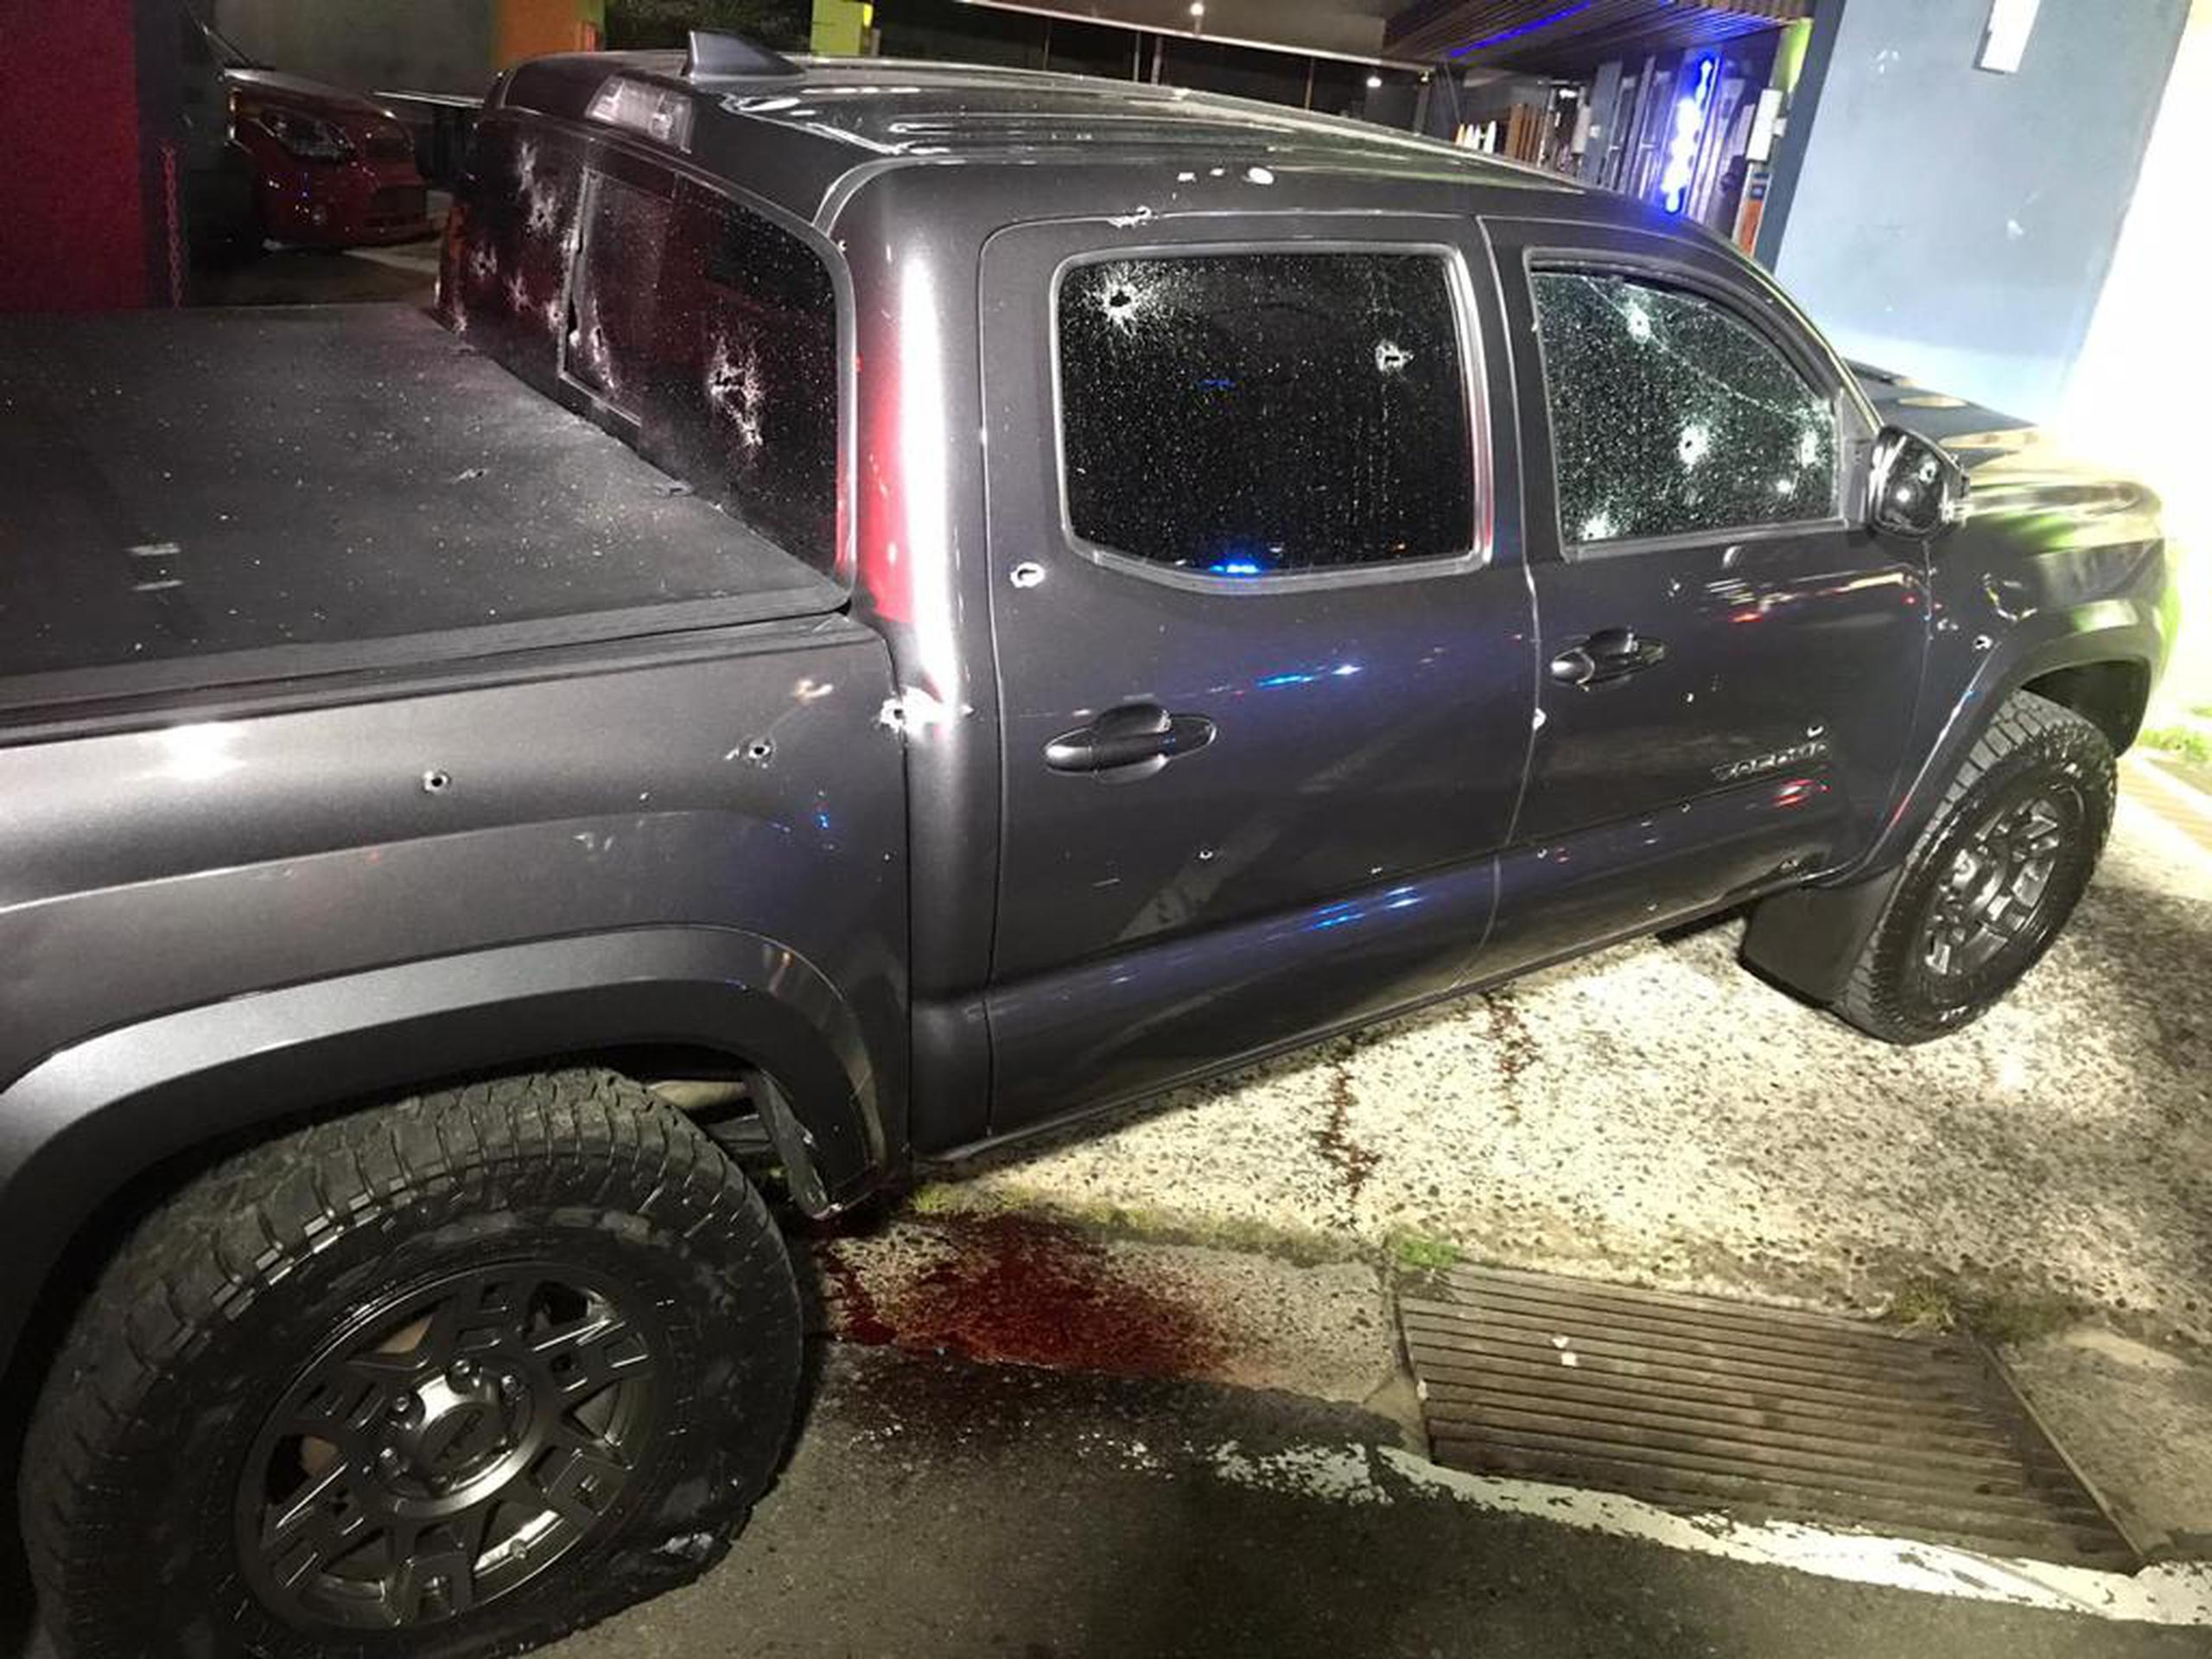 Imagen del vehículo en el que viajaba Pinky Curvy, que fue atacada a tiros.